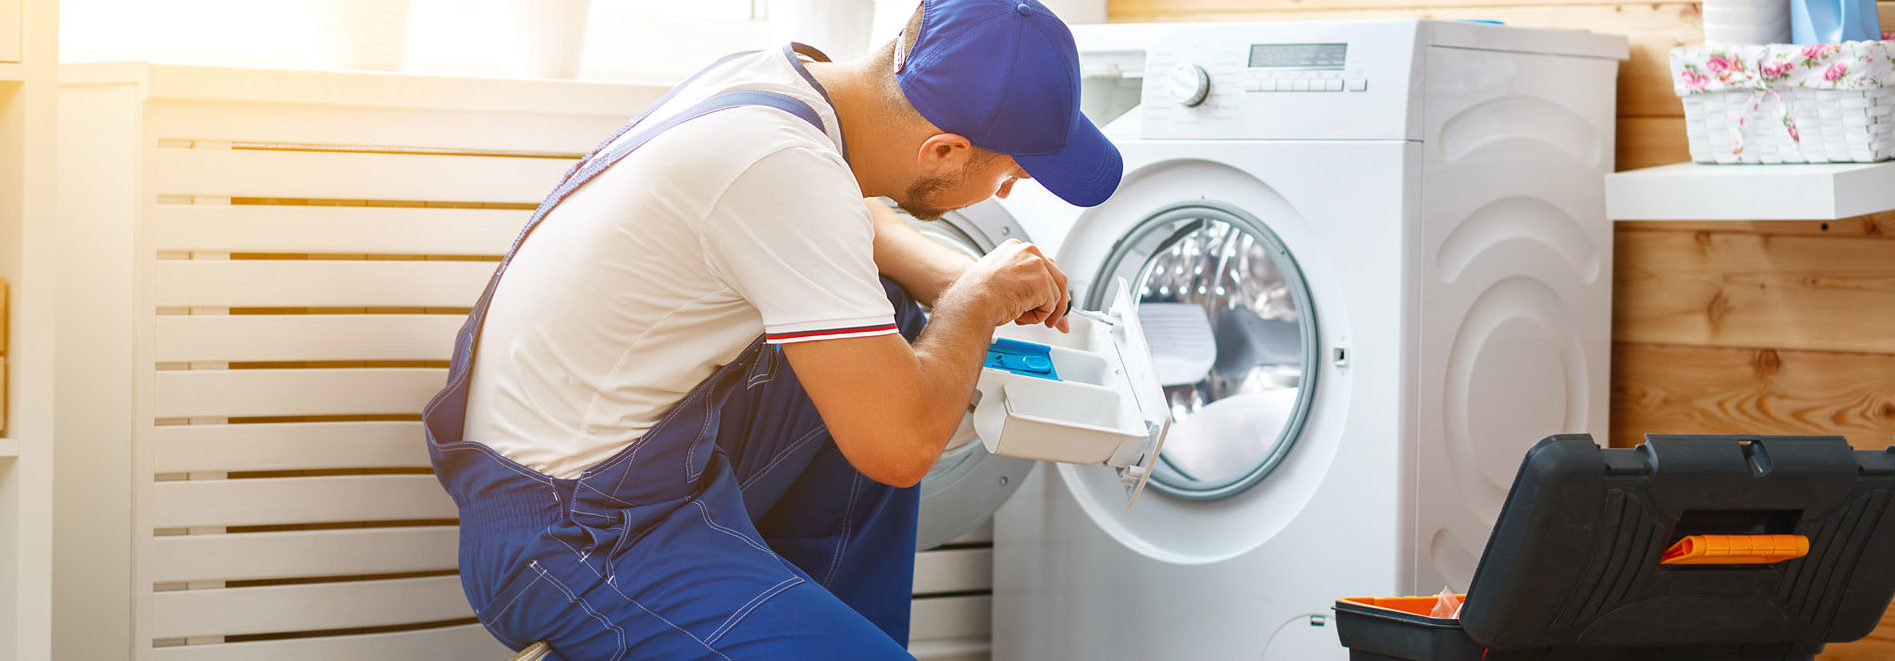 Washing Machine Repair - Clothes Washer Repair - DIY Repair Tips